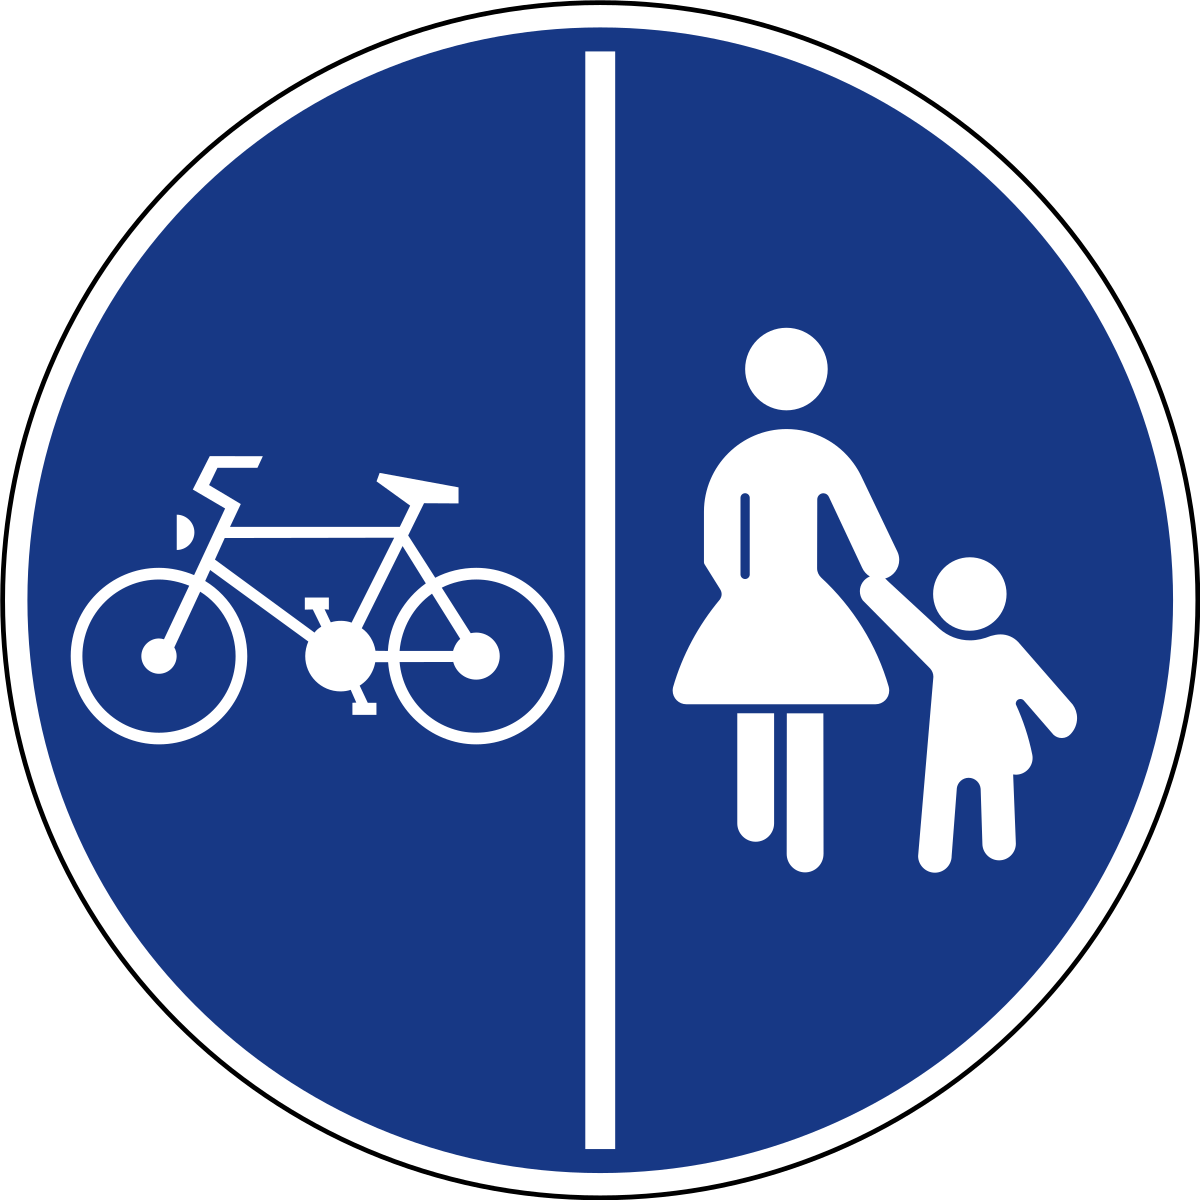 Пазл дорожного знака. Знак 4.4.1 велосипедная дорожка. Велосипедная дорожка дорожный знак. Знак велосипедная дорожка на белом фоне. Дорожные знаки для детей в картинках.